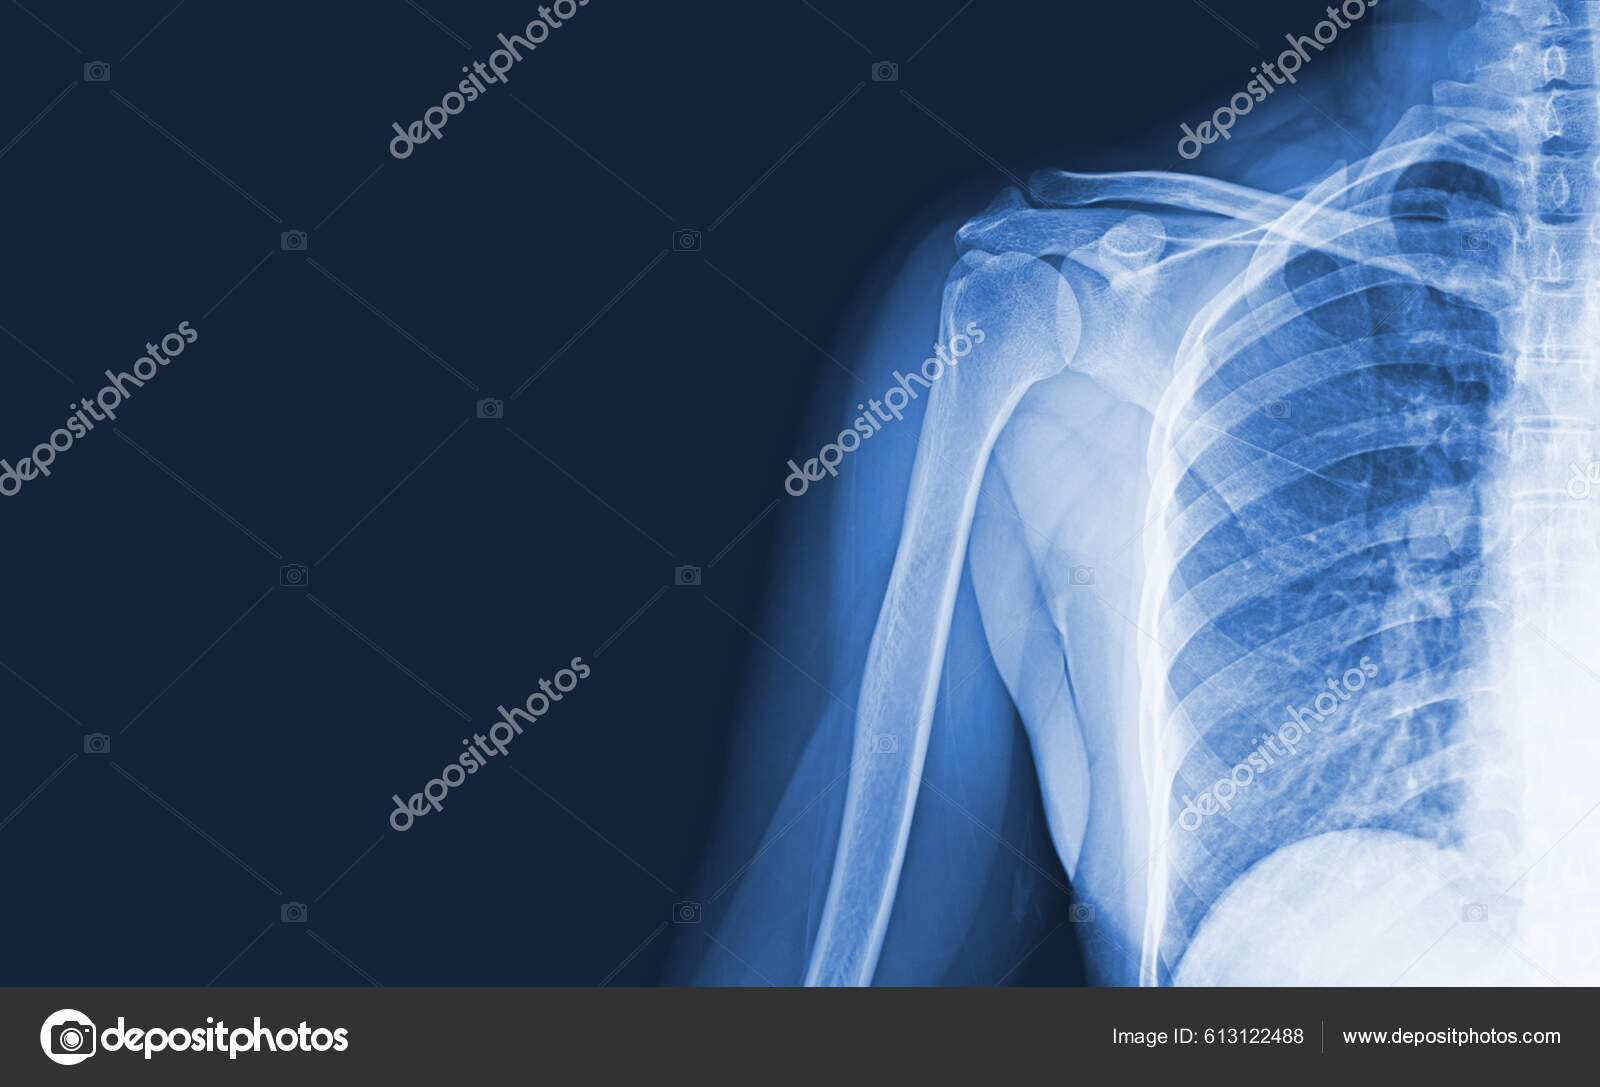 Röntgenbilder Des Schultergelenks Verletzungen Knochen Und Sehnen Für Eine  Medizinische - Stockfotografie: lizenzfreie Fotos © Richmanphoto 613122488